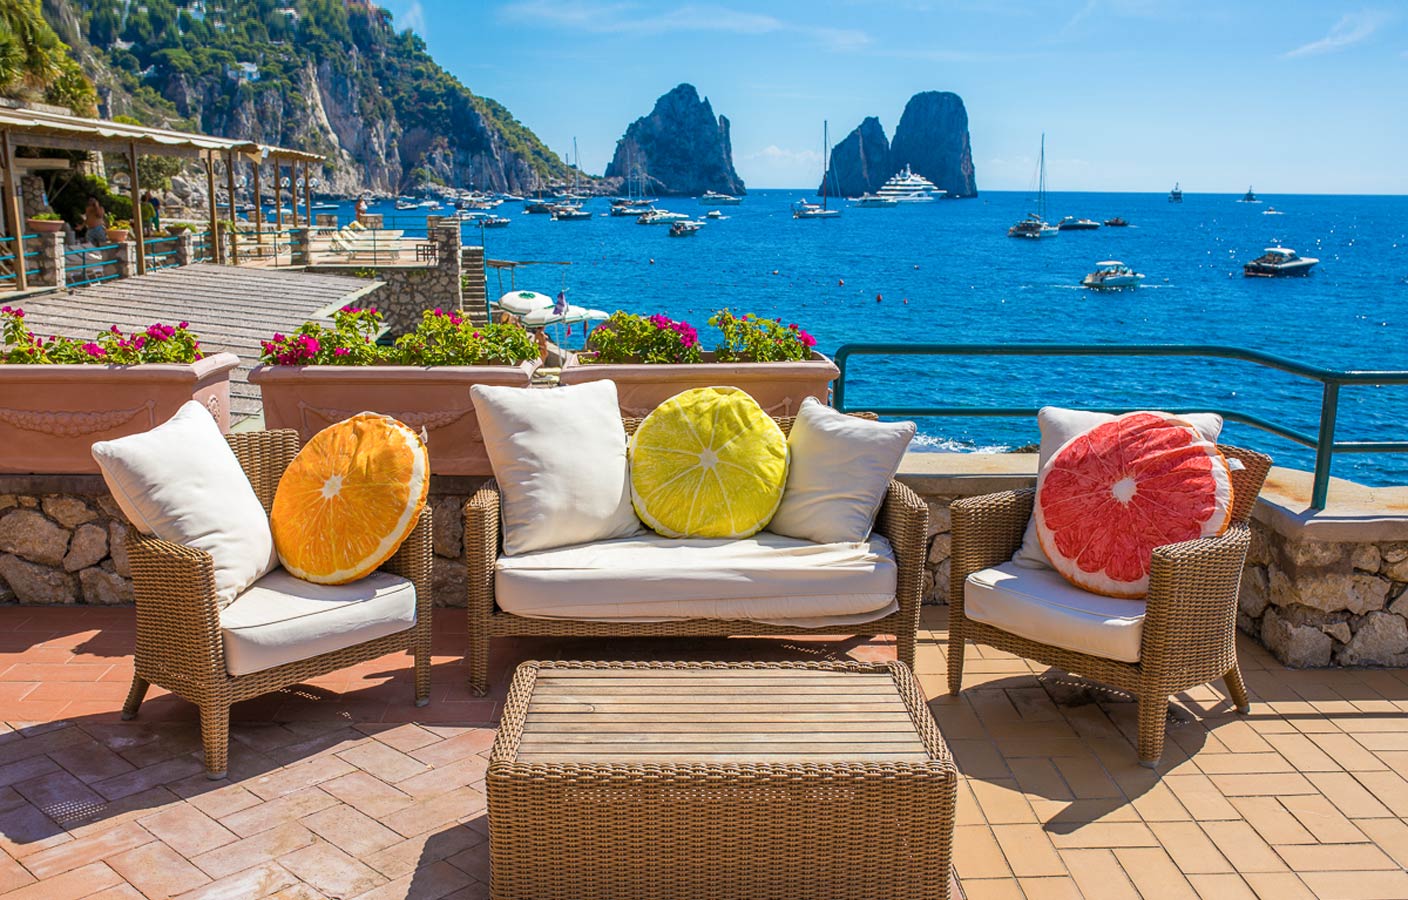 La Canzone del Mare - Beach club and restaurant, Capri